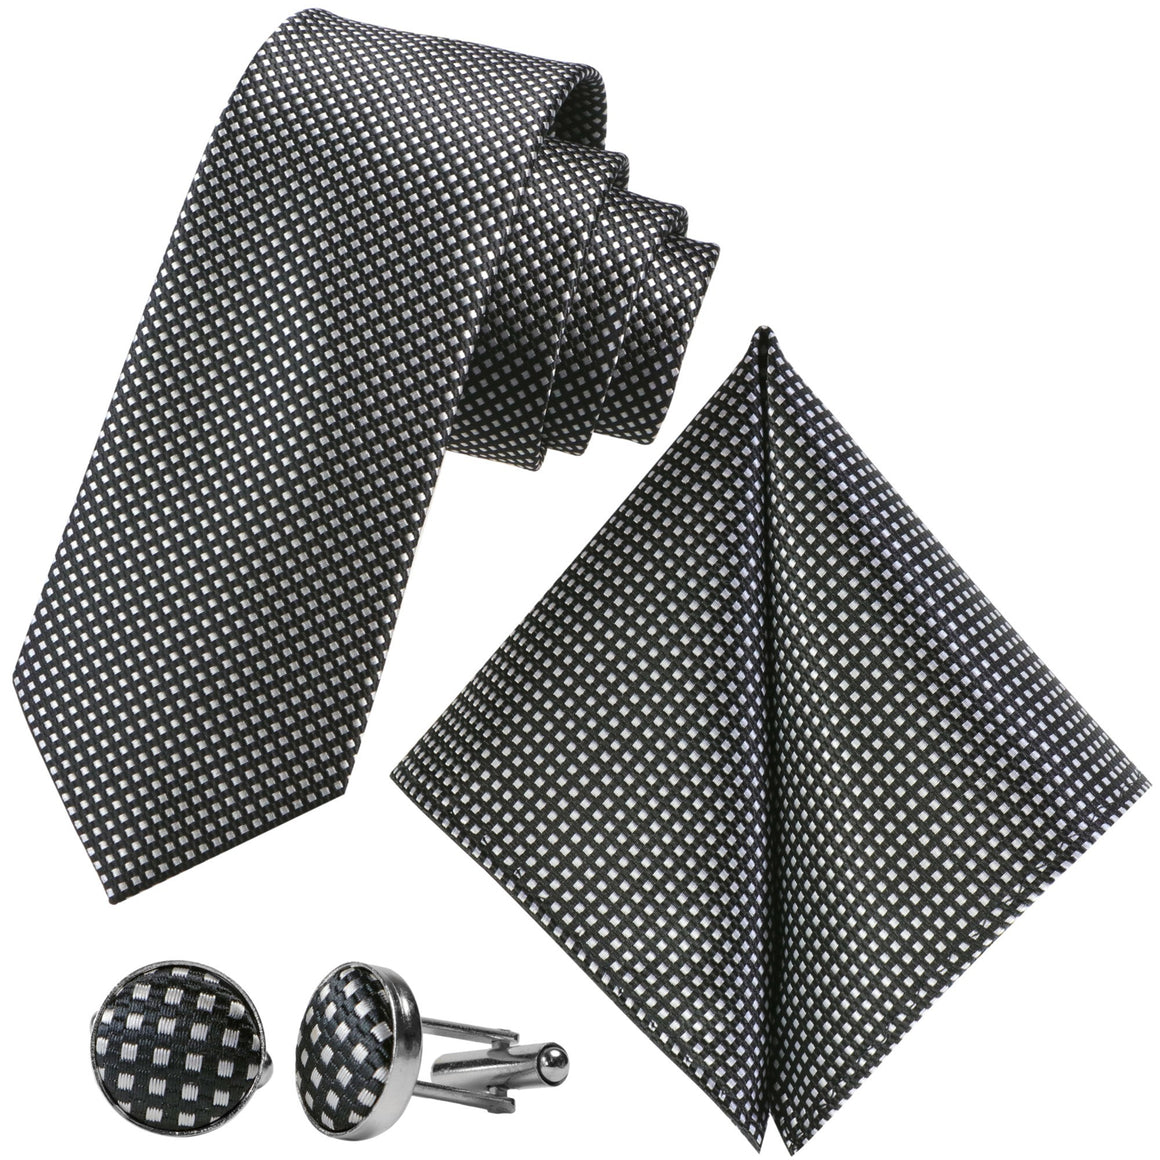 GASSANI 3 ks. Souprava, 7 cm úzká černobílá kostkovaná pánská kravata, svatební kravata, souprava kravat, pánská kravata, kapesník, manžetové knoflíčky